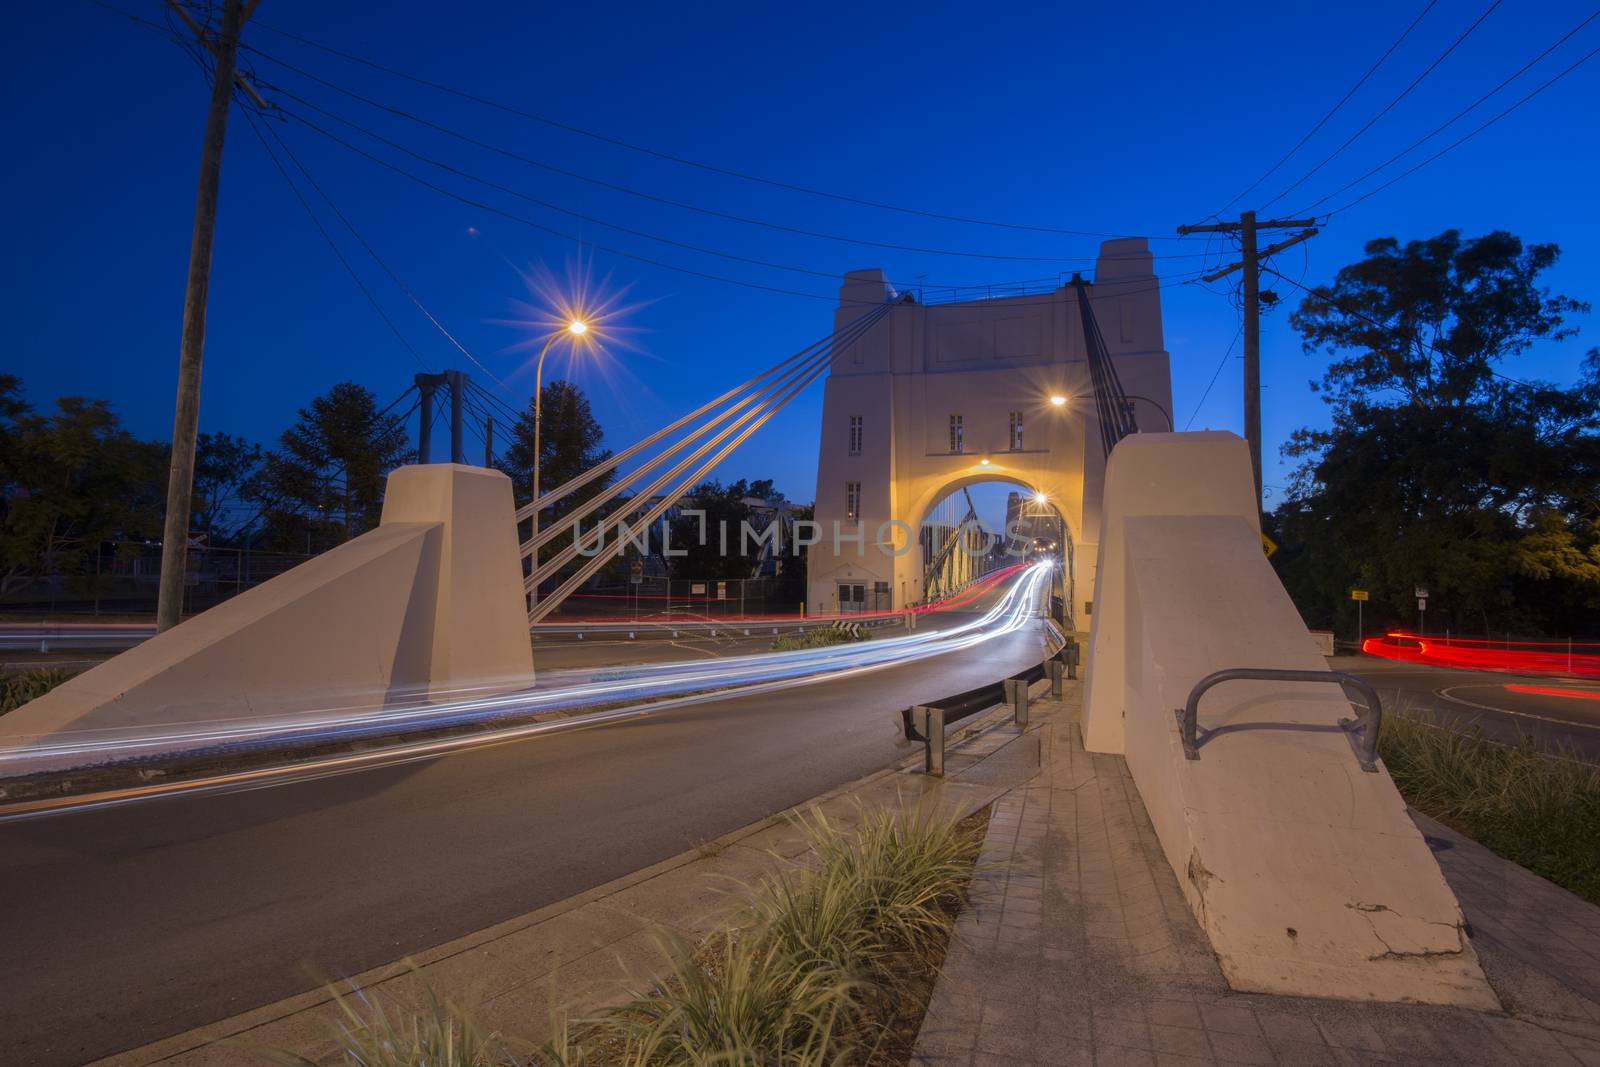 Walter Taylor Bridge also known as Indooroopilly Bridge in Brisbane, Queensland.